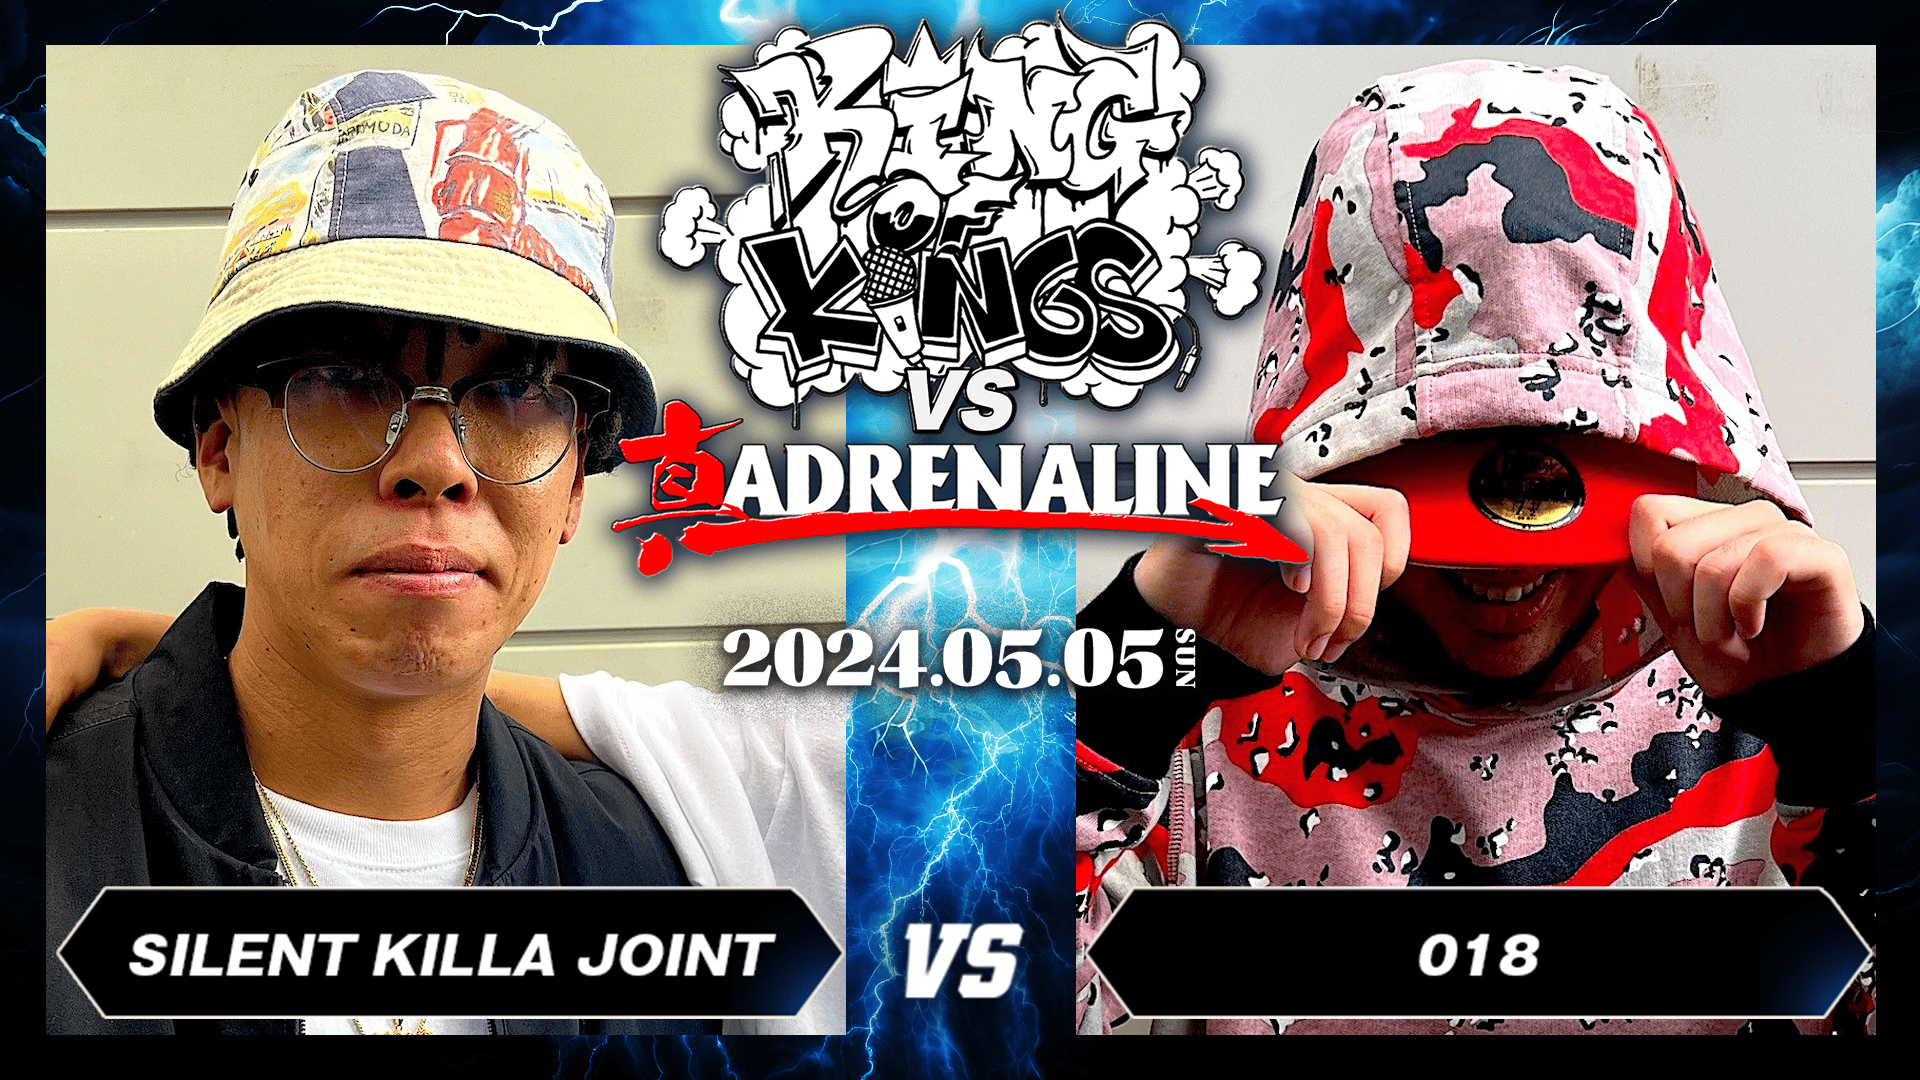 KING OF KINGS vs 真 ADRENALINE - SILENT KILLA JOINT vs 018【BEST16】